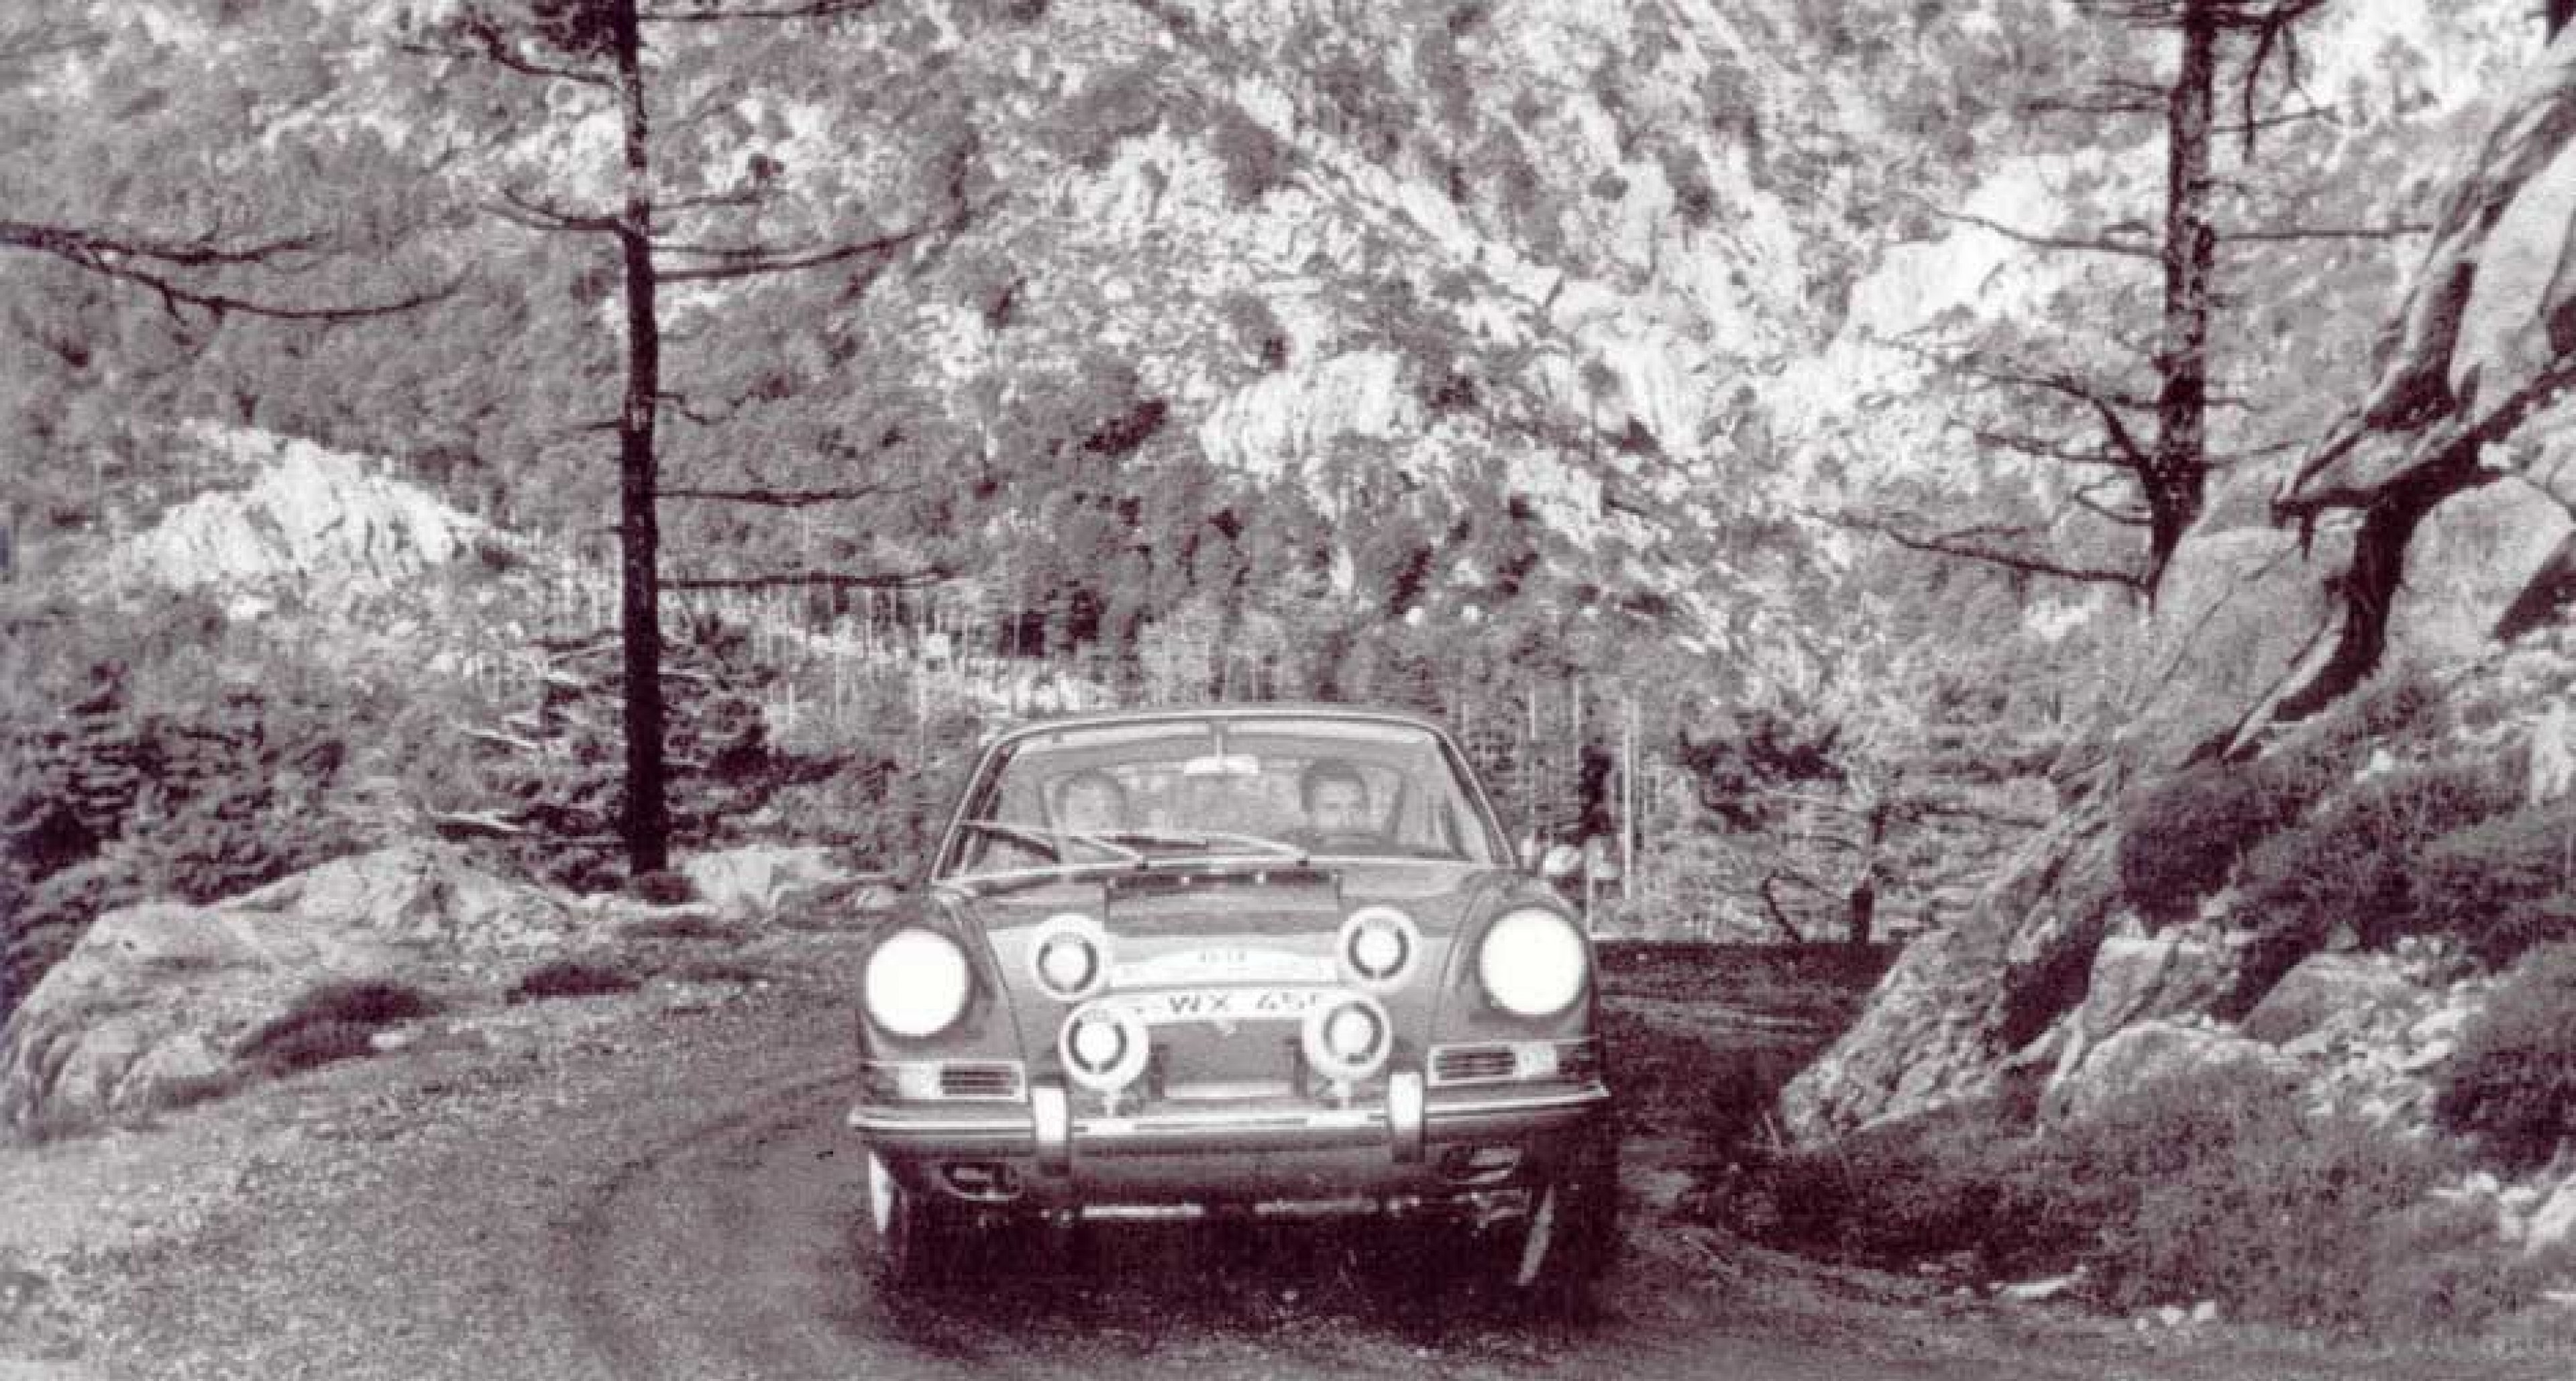 On the 1966 Tour de Corse